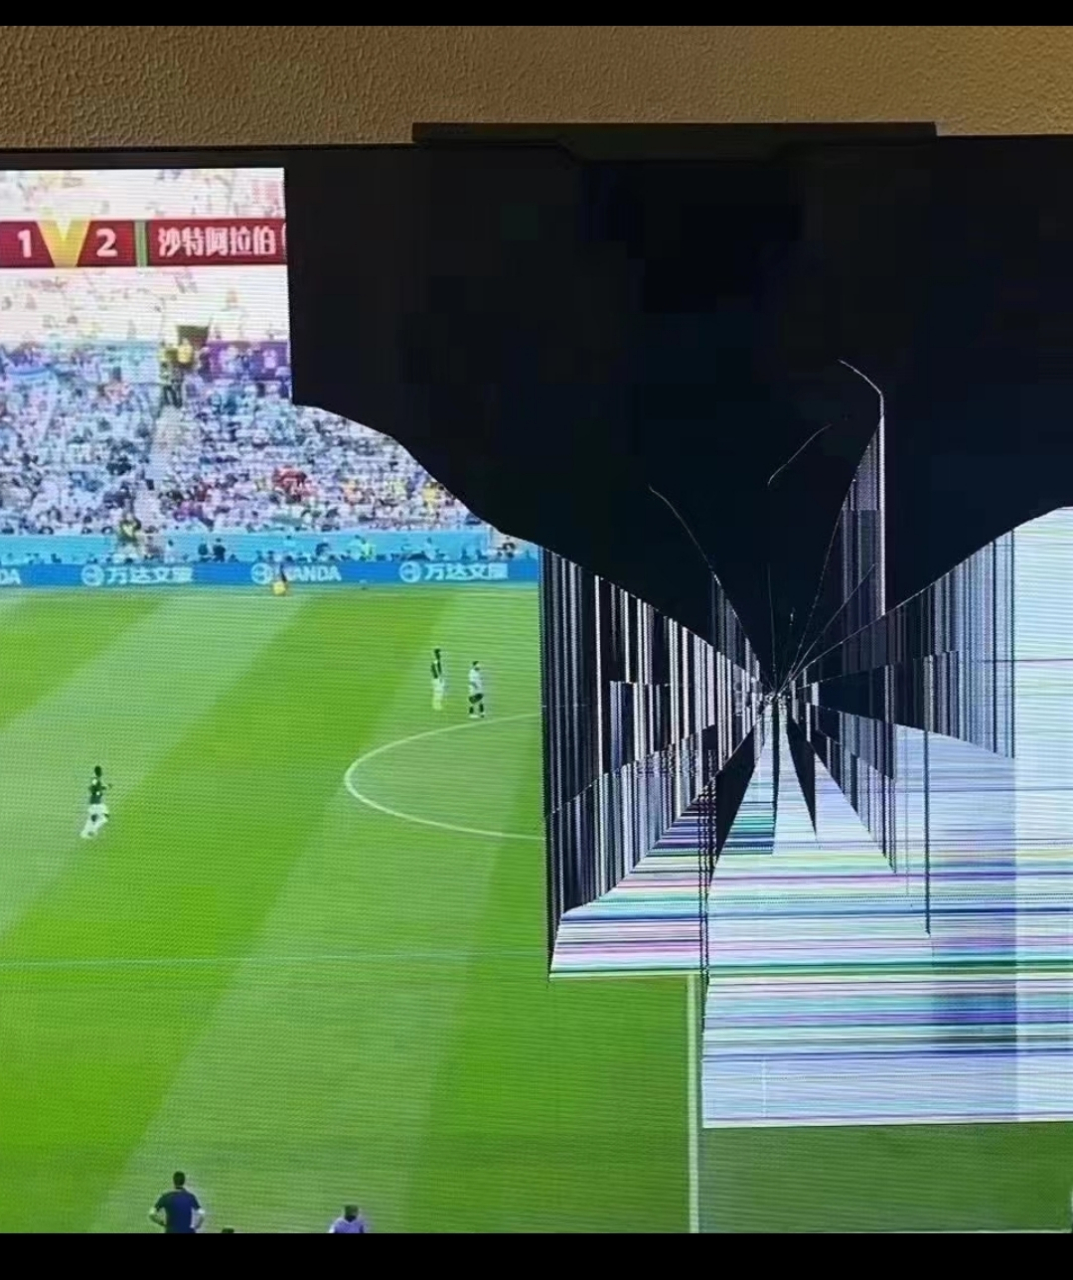 球迷砸电视图片